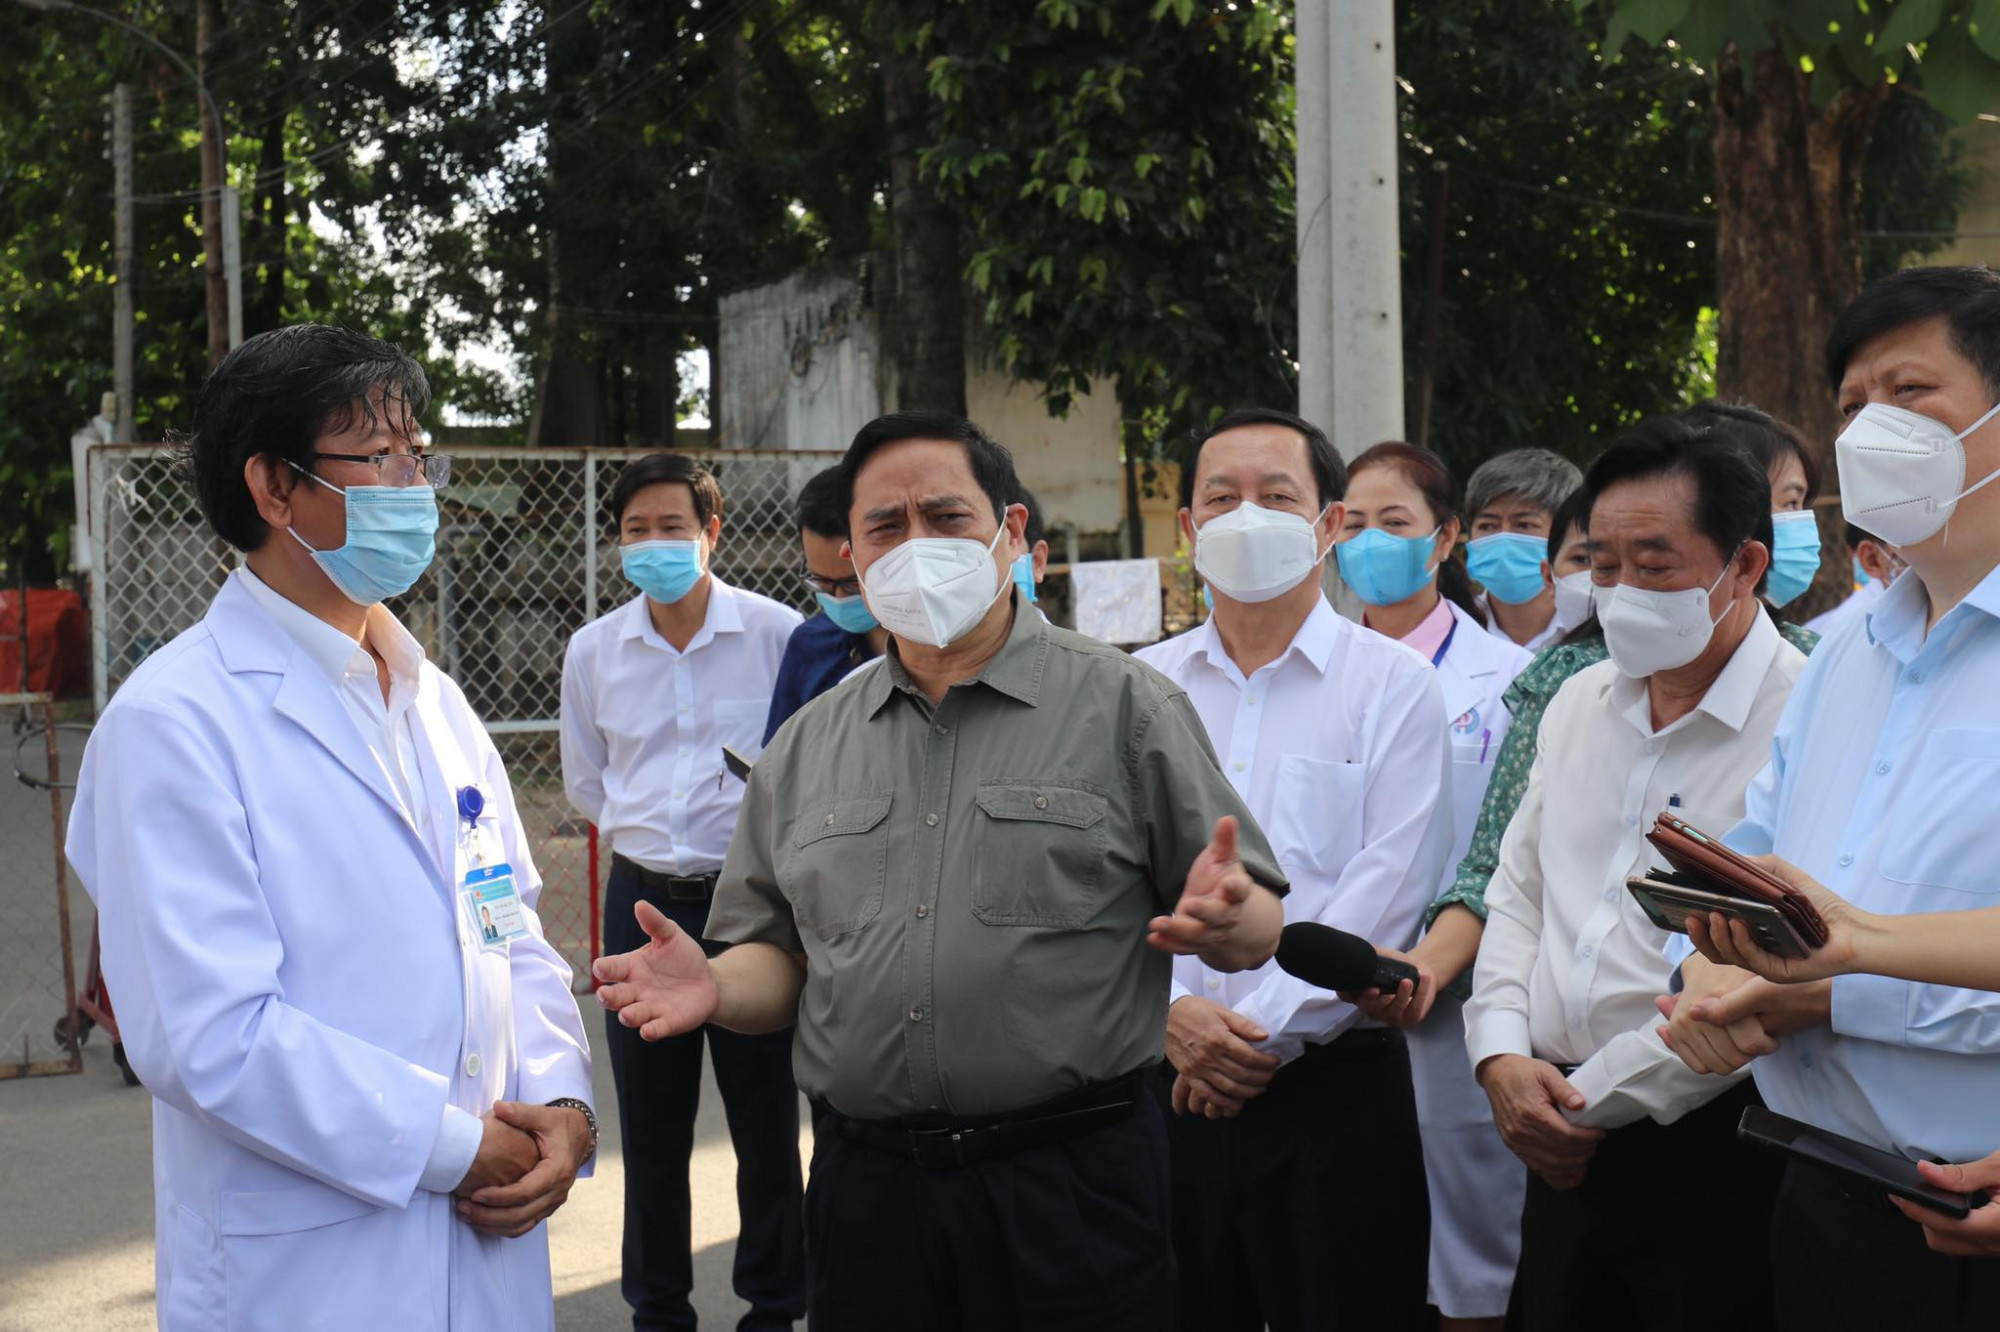 Bệnh viện đa khoa tỉnh Bình Dương hiện điều trị cho 146 bệnh nhân COVID-19 tại khu cách ly.Thủ tướng Chính phủ Phạm Minh Chính biểu dương công tác phòng, chống dịch tại bệnh viện tỉnh